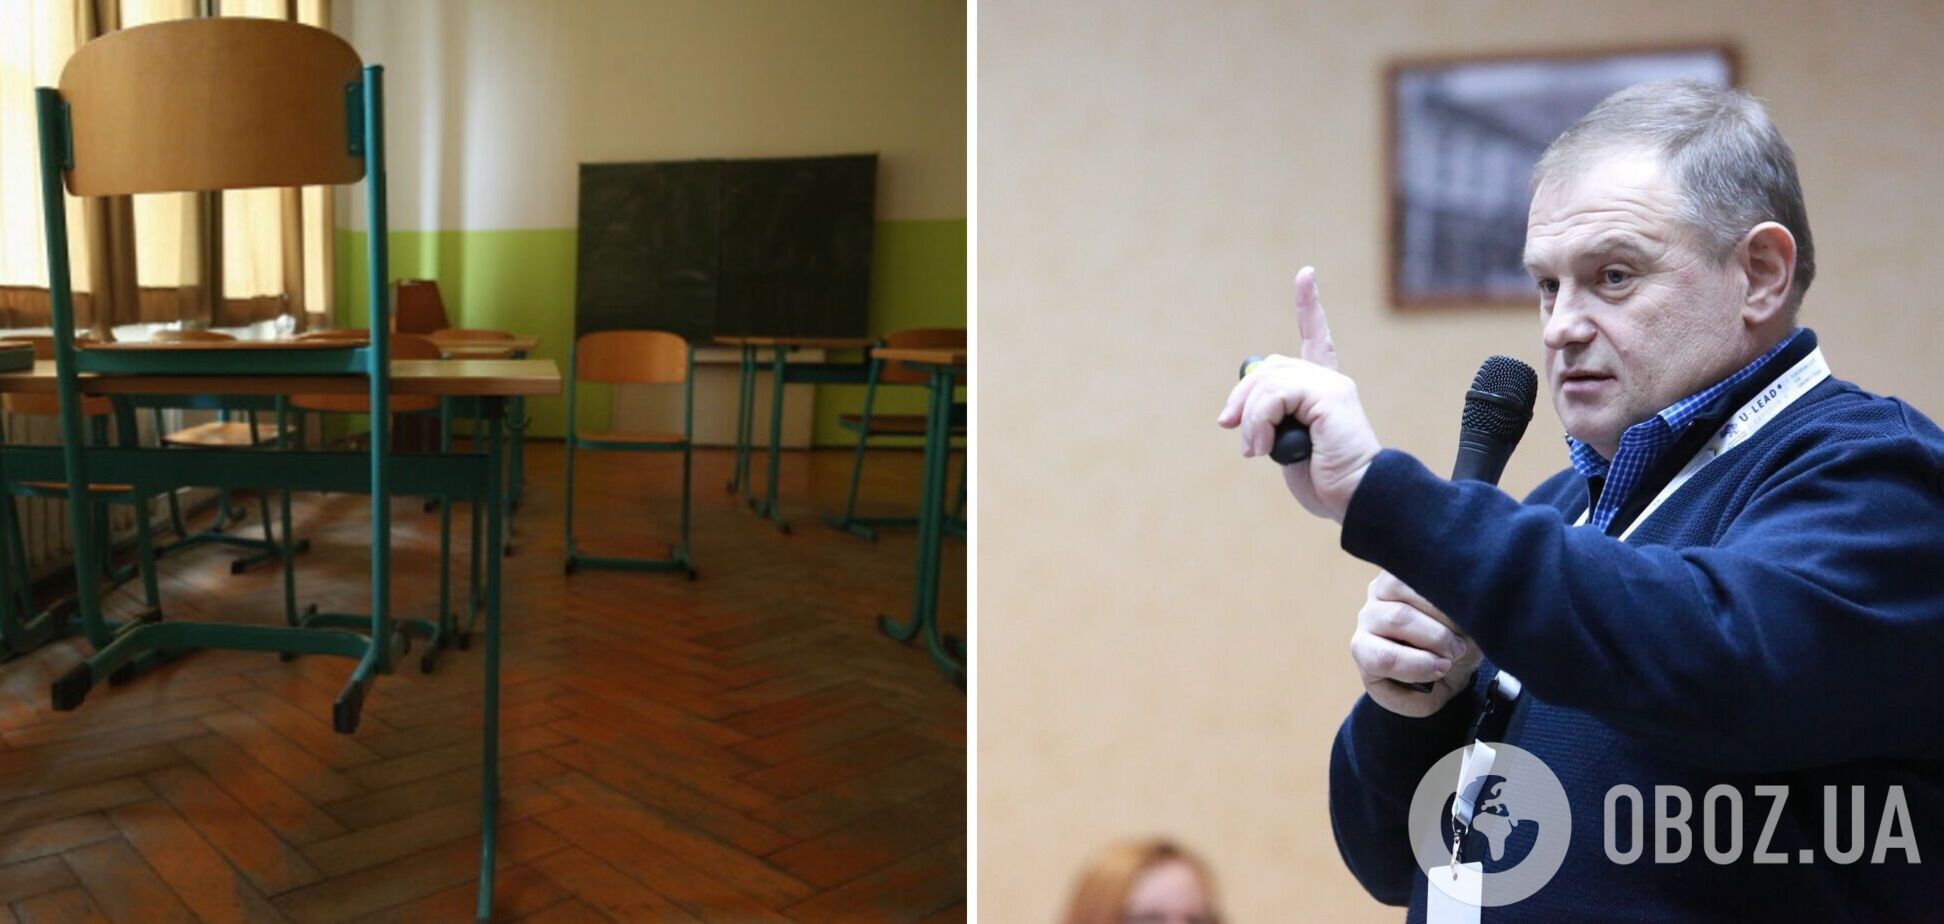 Освітній експерт Сергій Дятленко озвучив два варіанти, які врятують малі сільські школи від закриття: зміни відчують лише директор і кілька педагогів